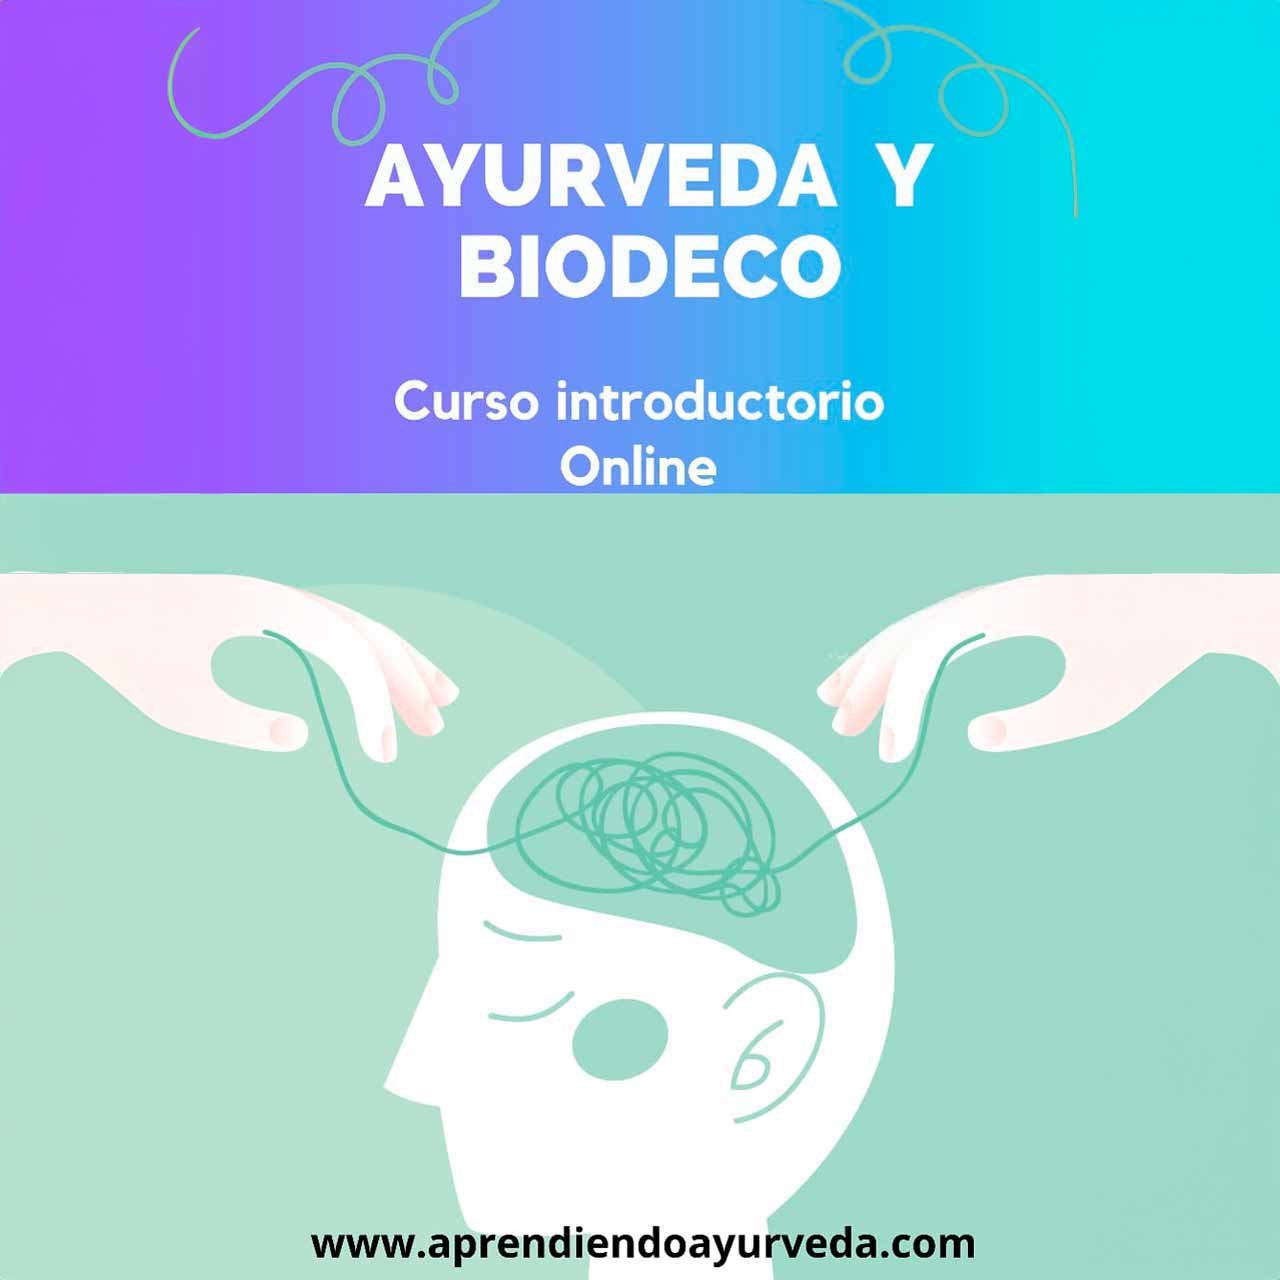 Ayurveda y la mente 2 (Ayurveda y biodecodificación)